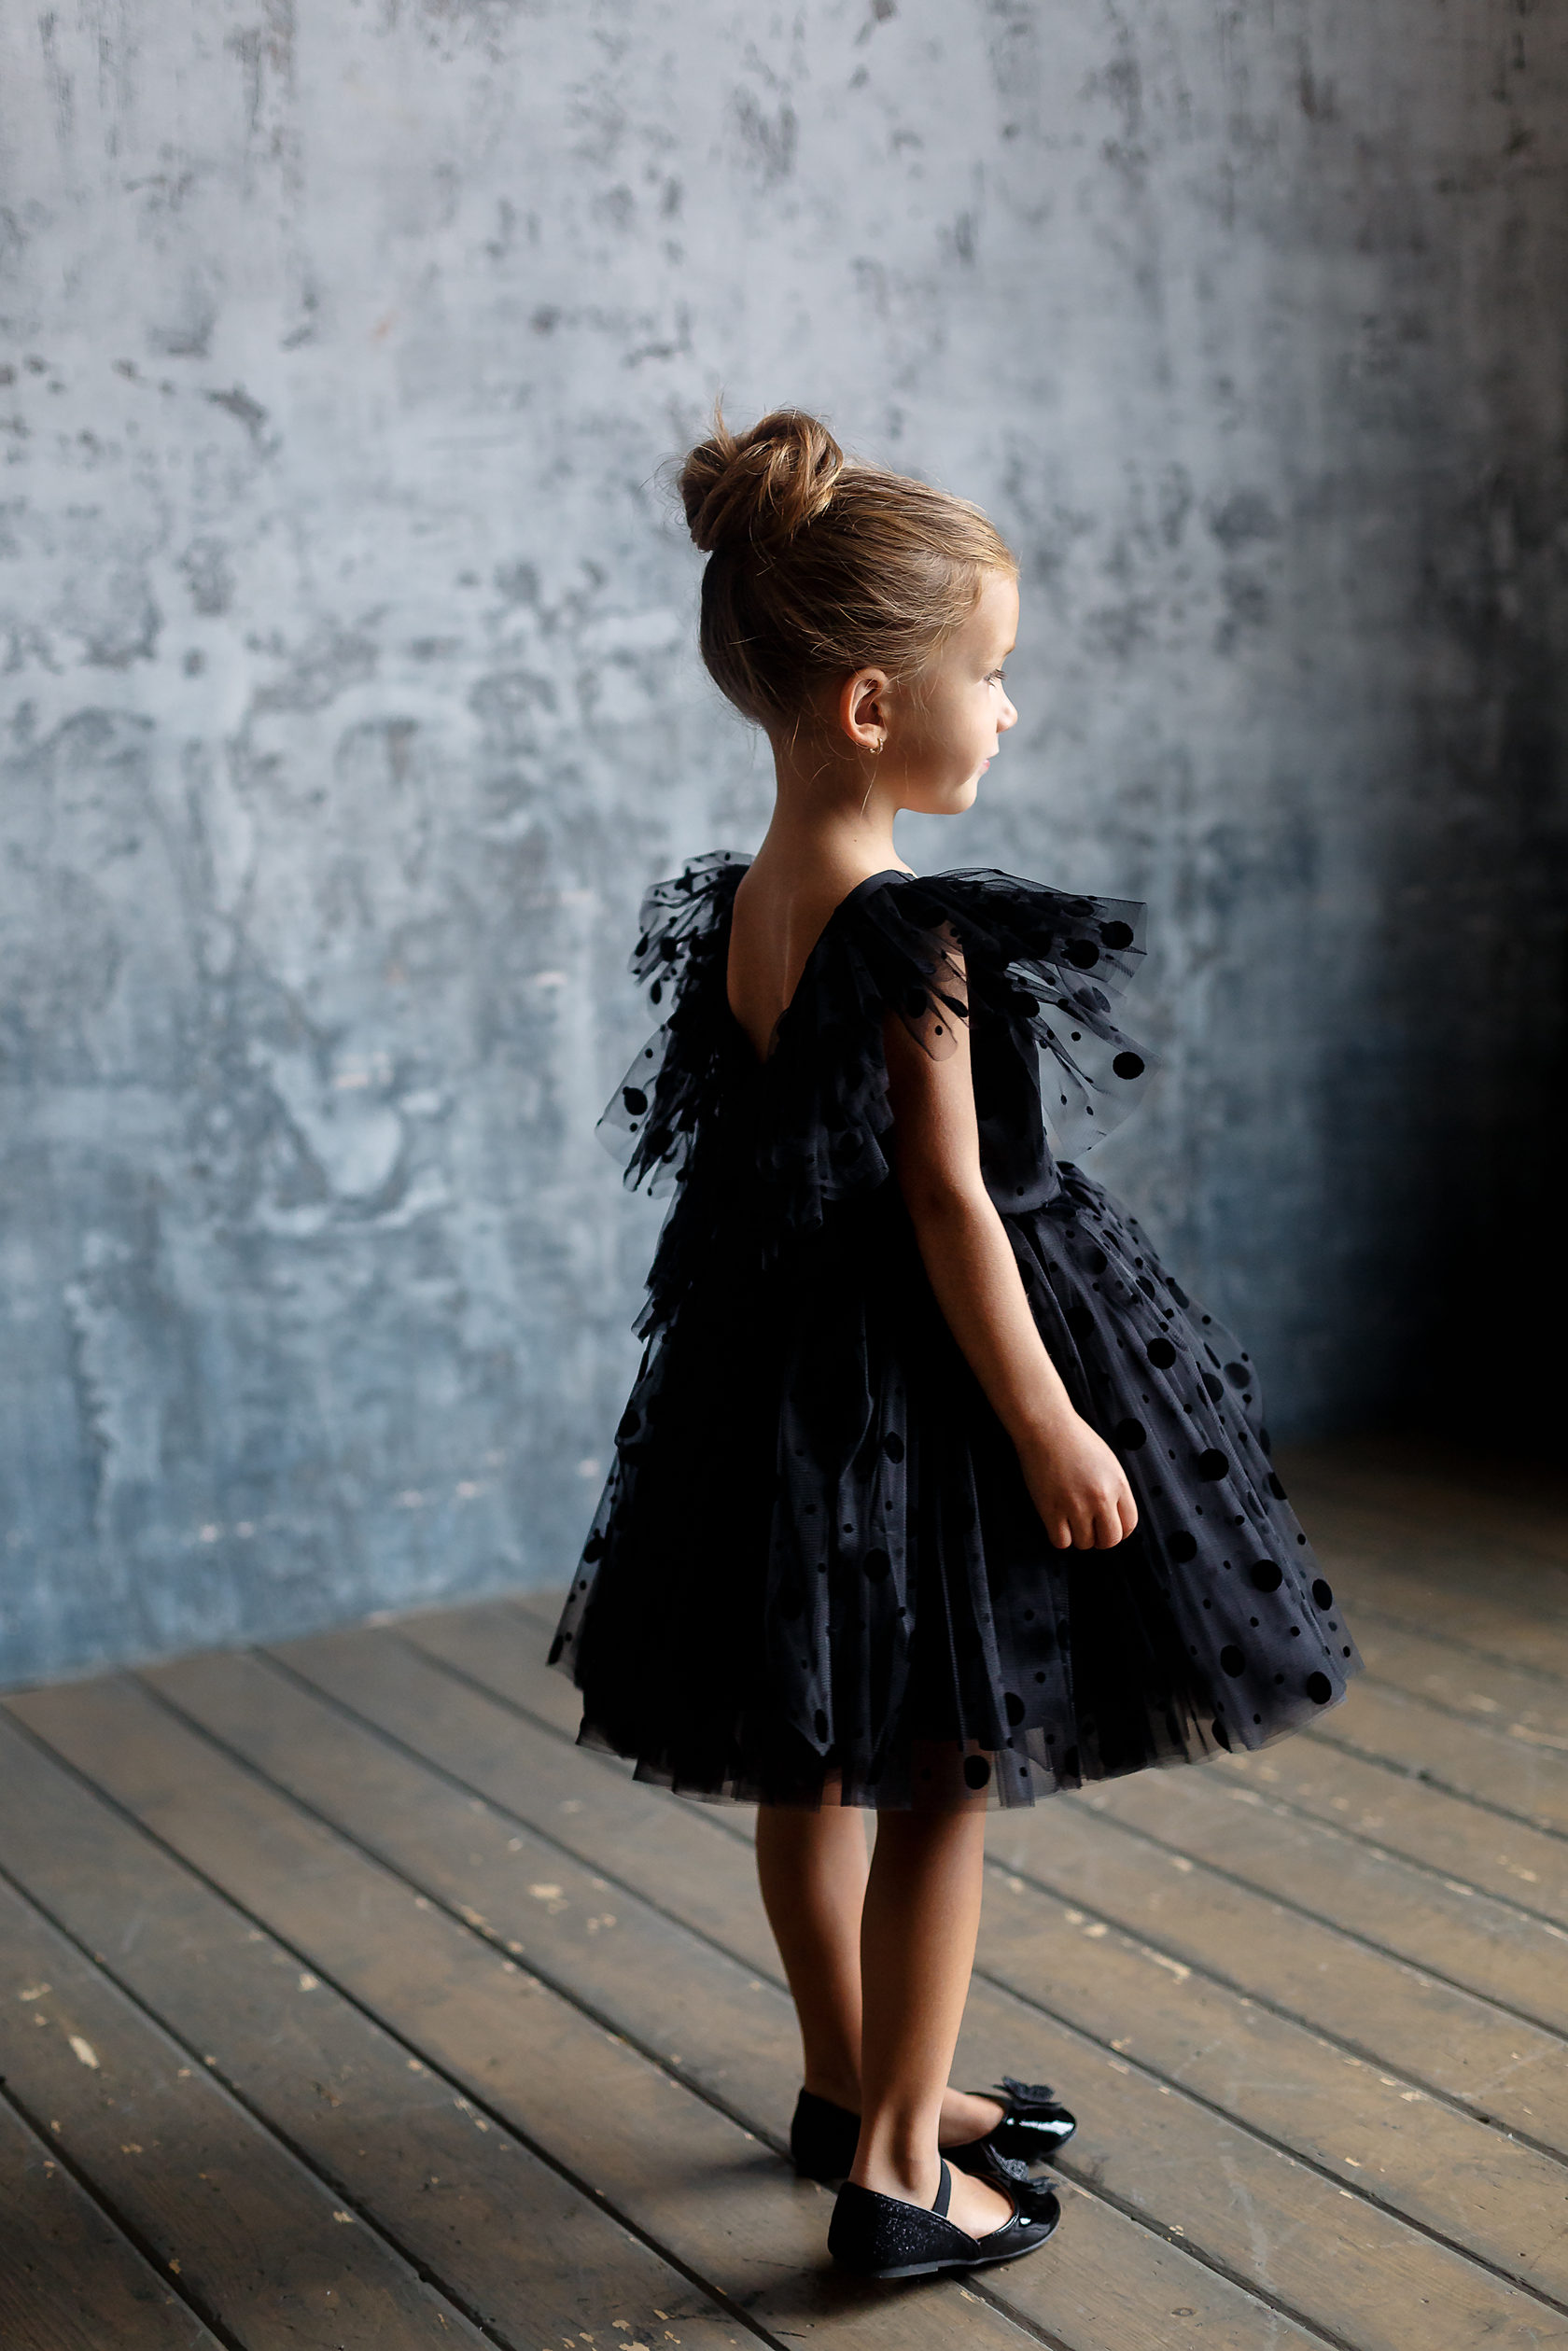 Черное платье для девочки